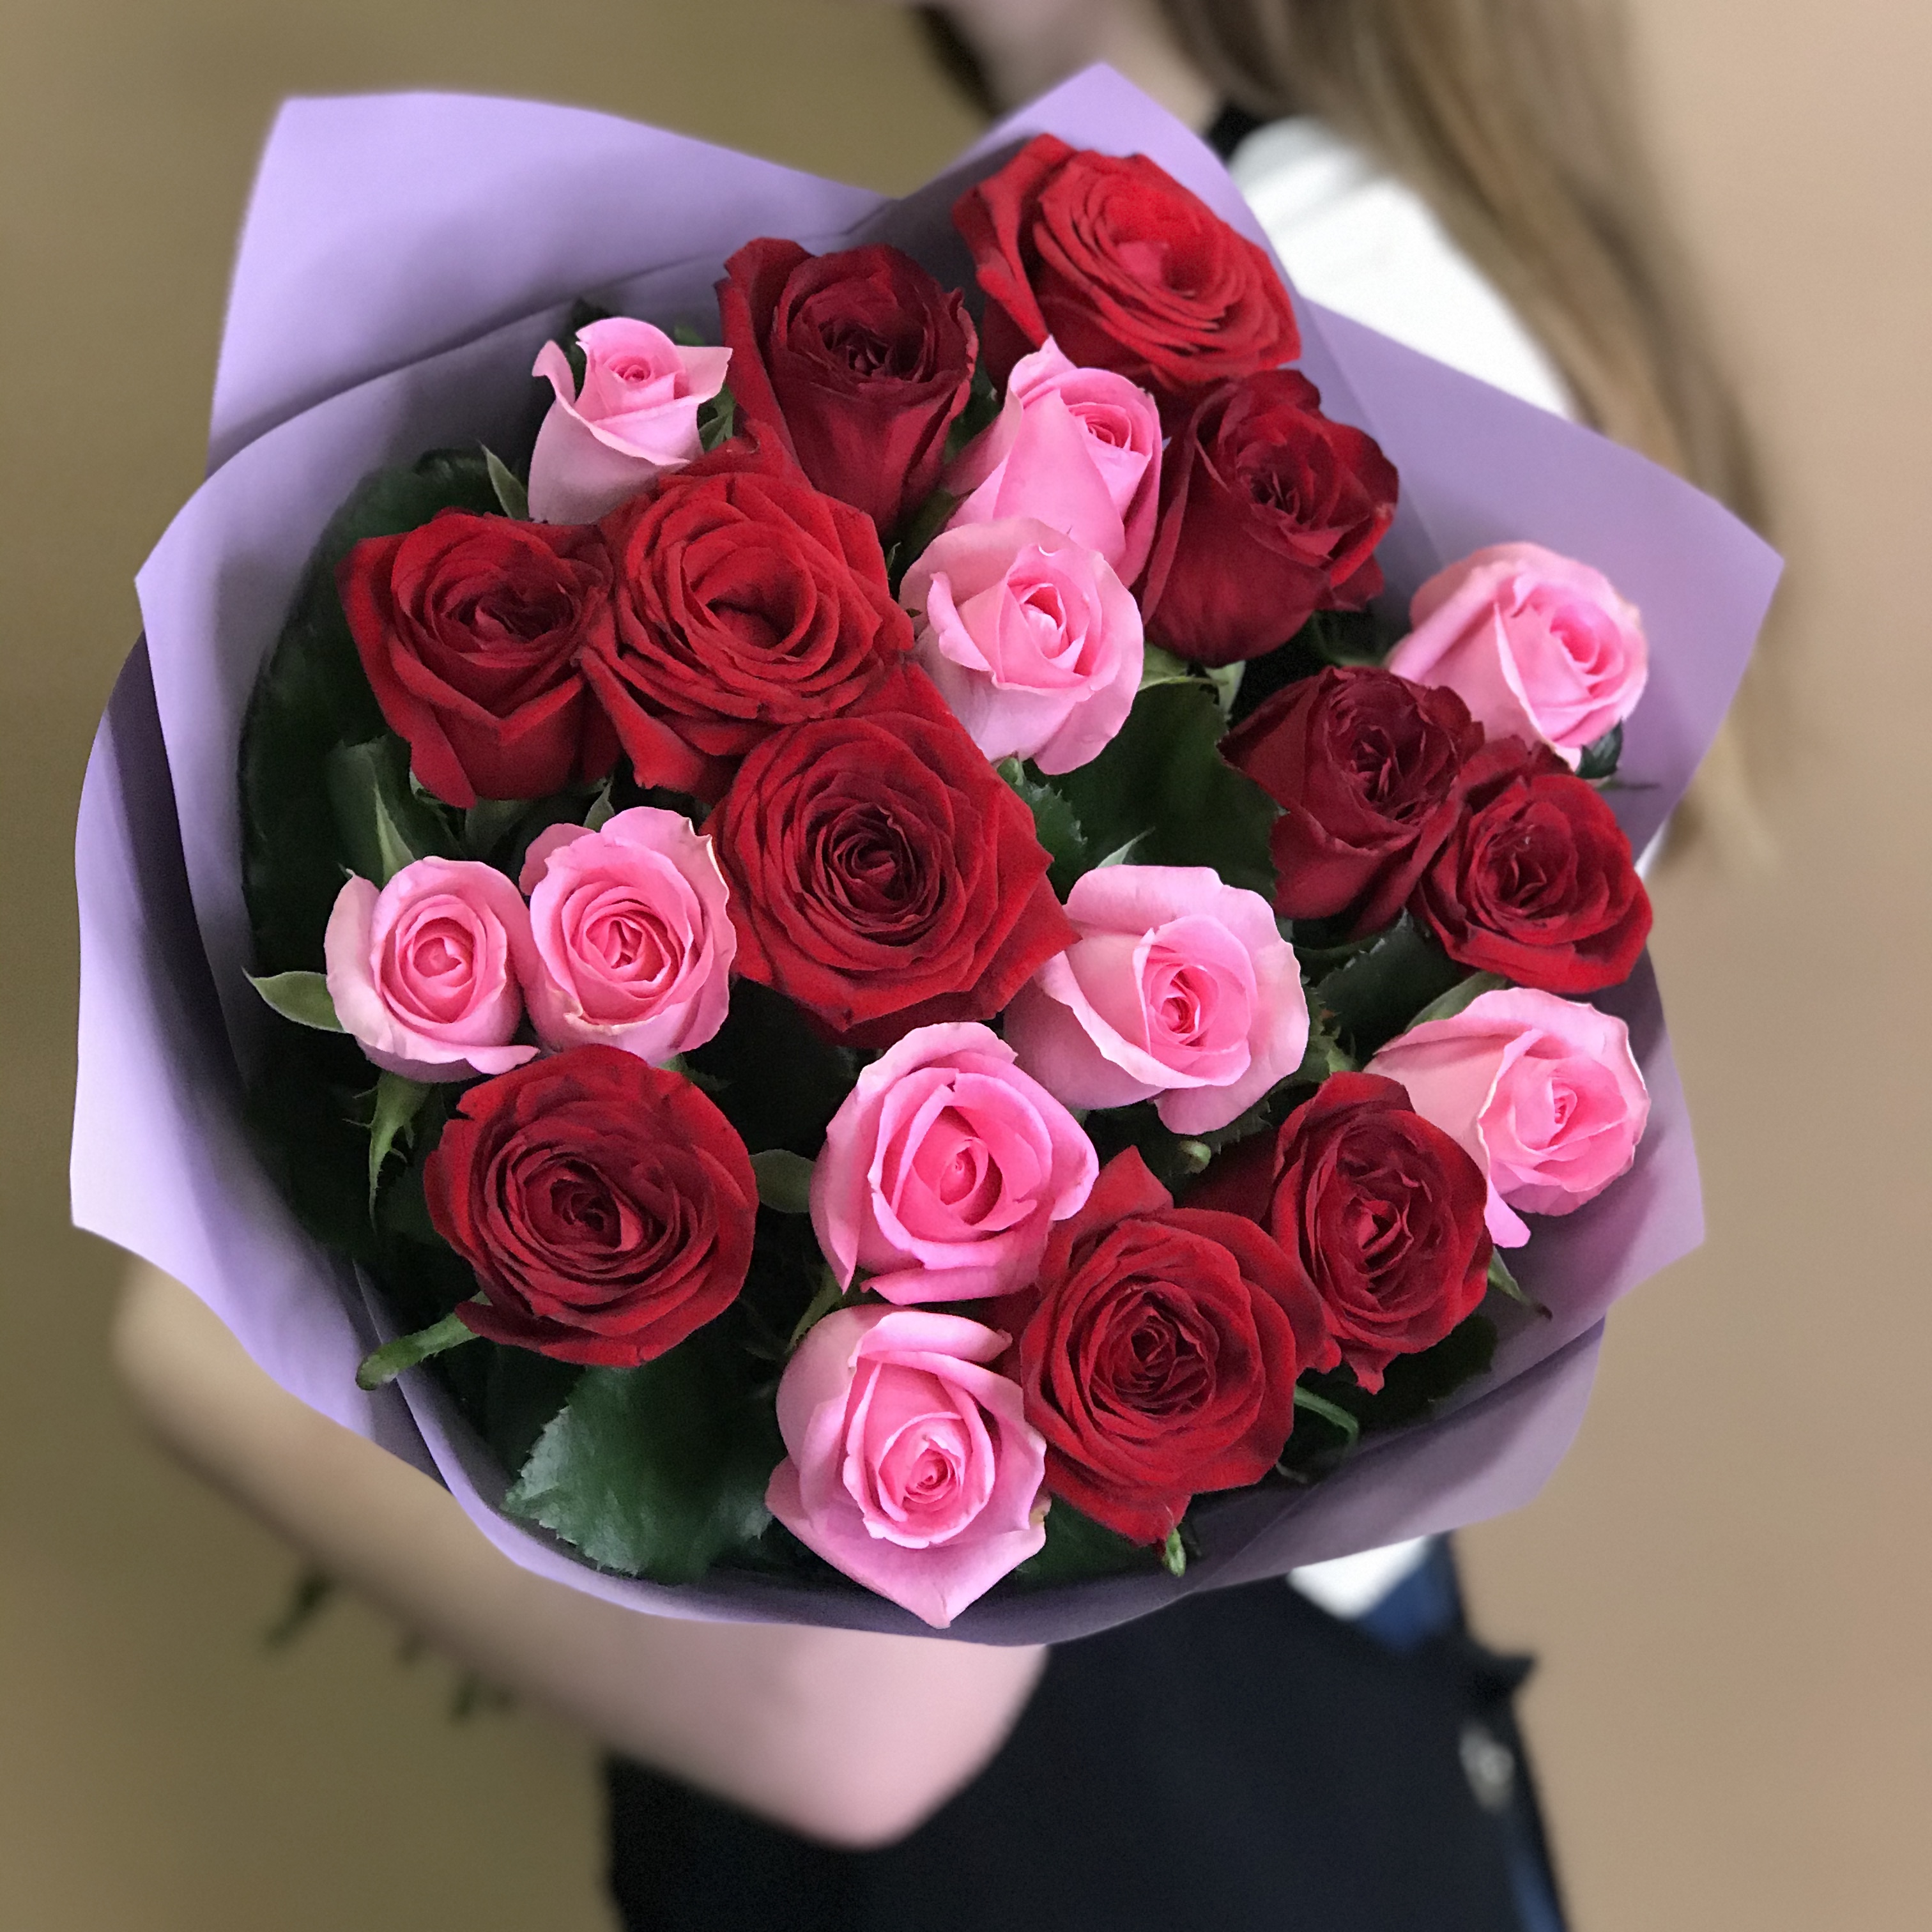 букет из красных и розовых роз 25 шт 60 см Букет из красных и розовых роз 21 шт. (60 см)